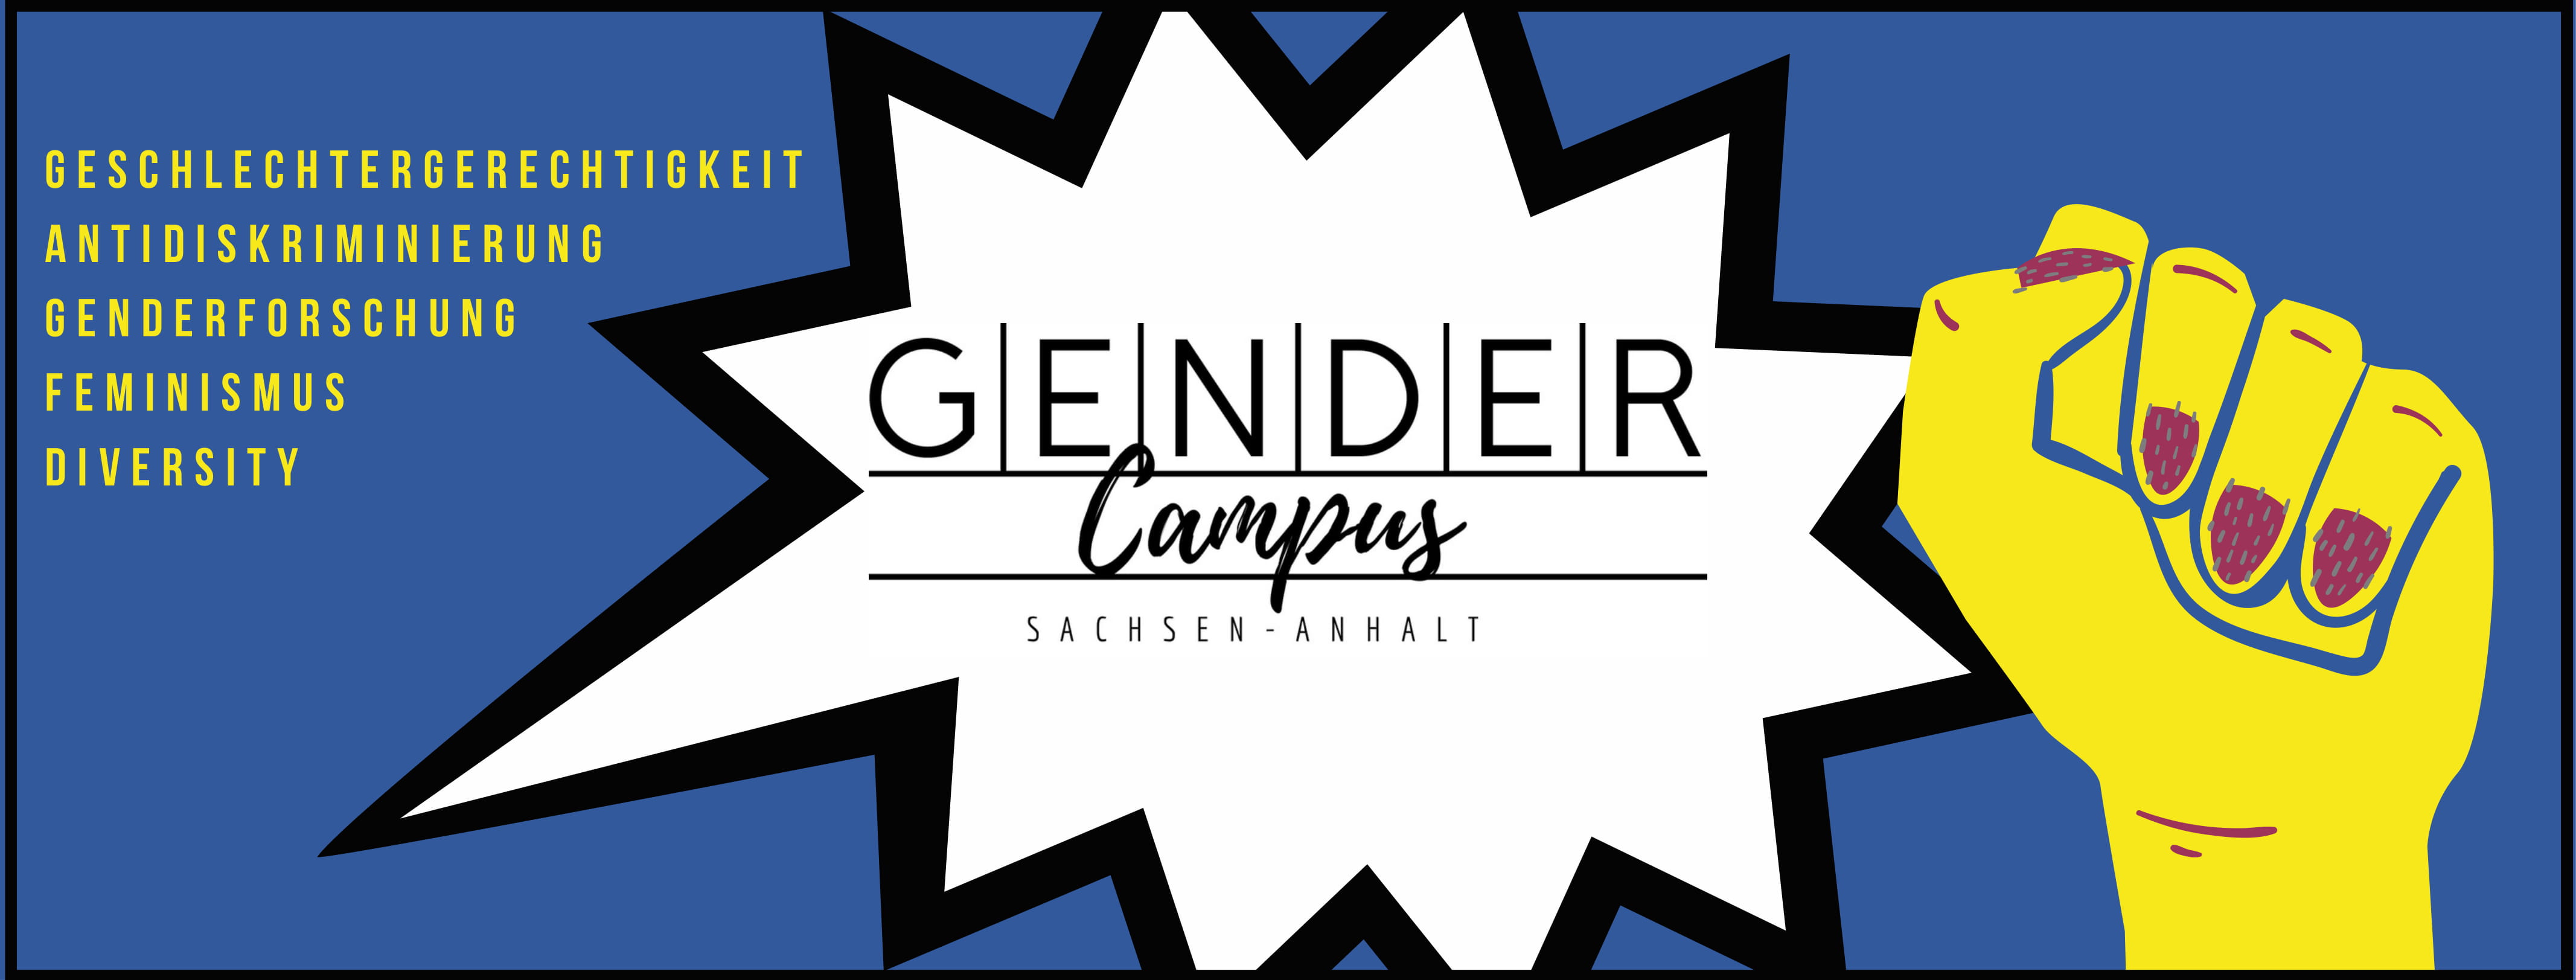 Gendercampus_Header-1